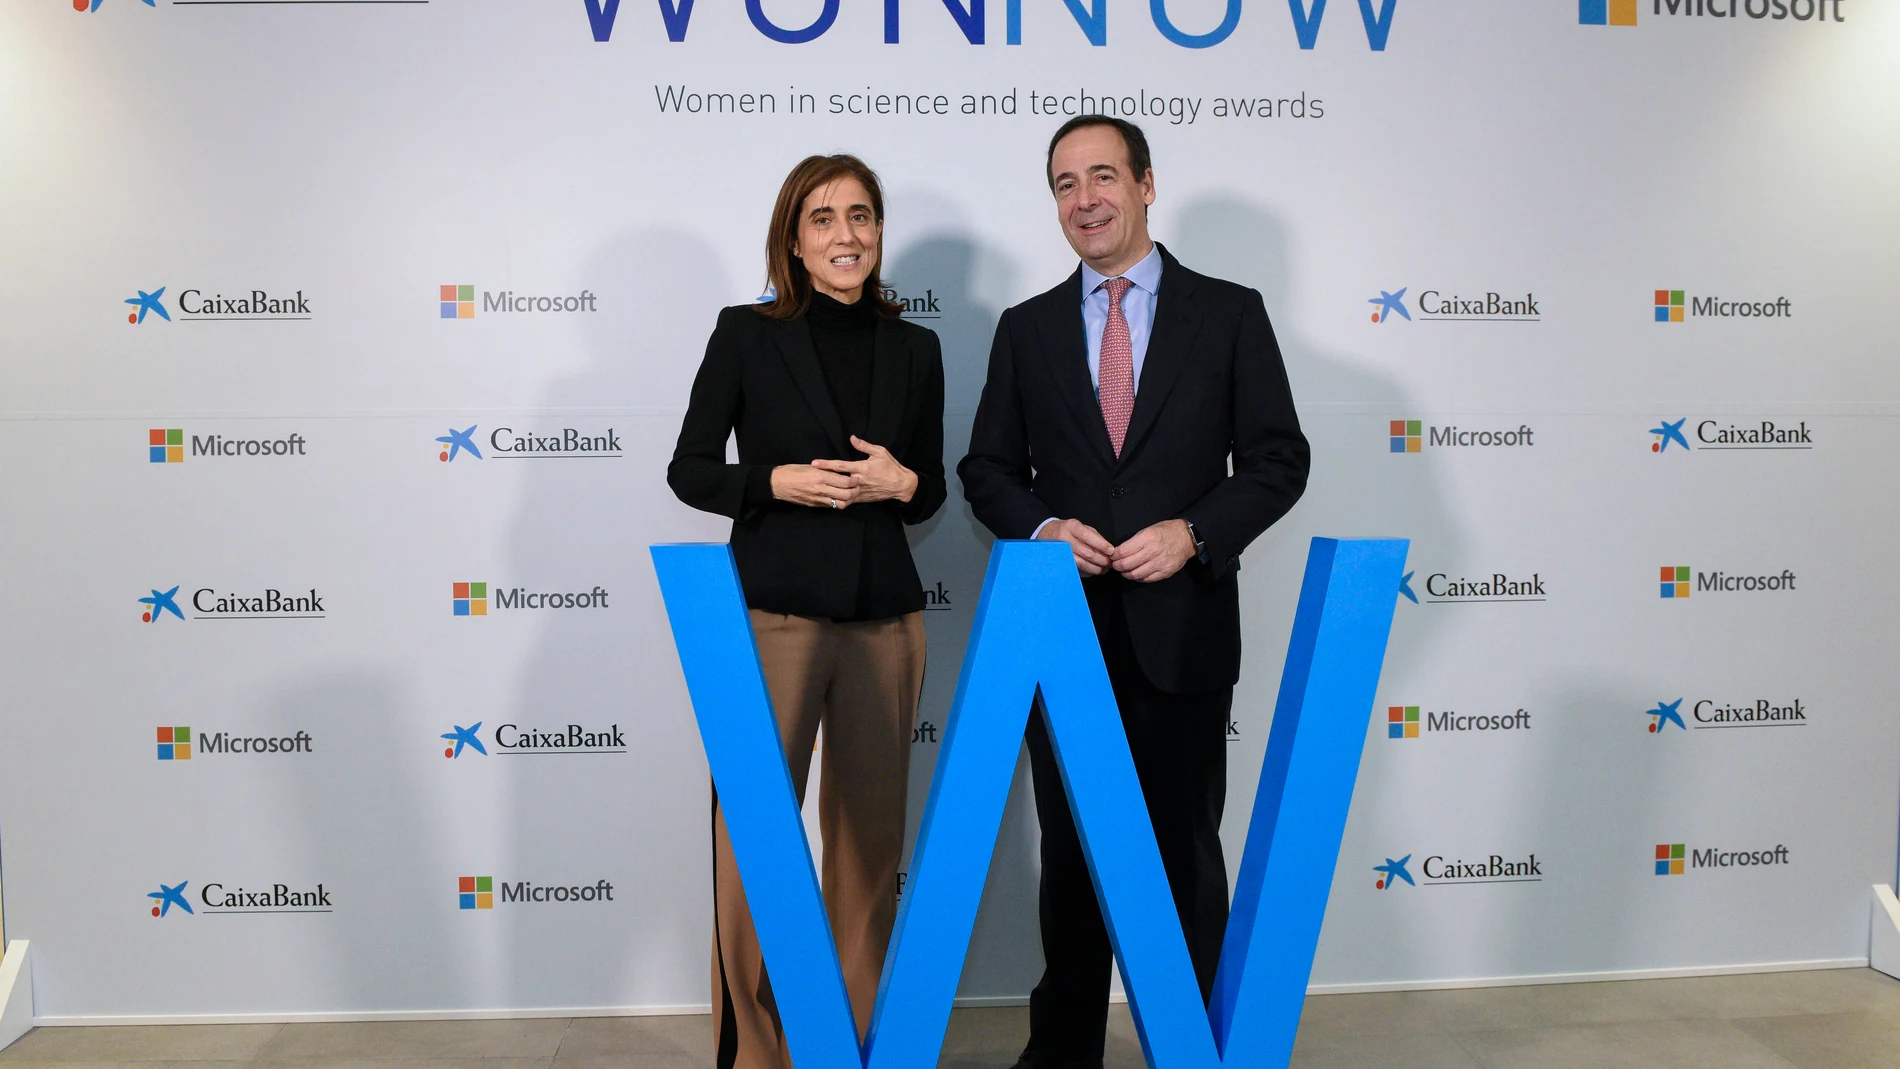 Economía.- CaixaBank y Microsoft convocan los premios Wonnow para las mejores estudiantes Stem españolas